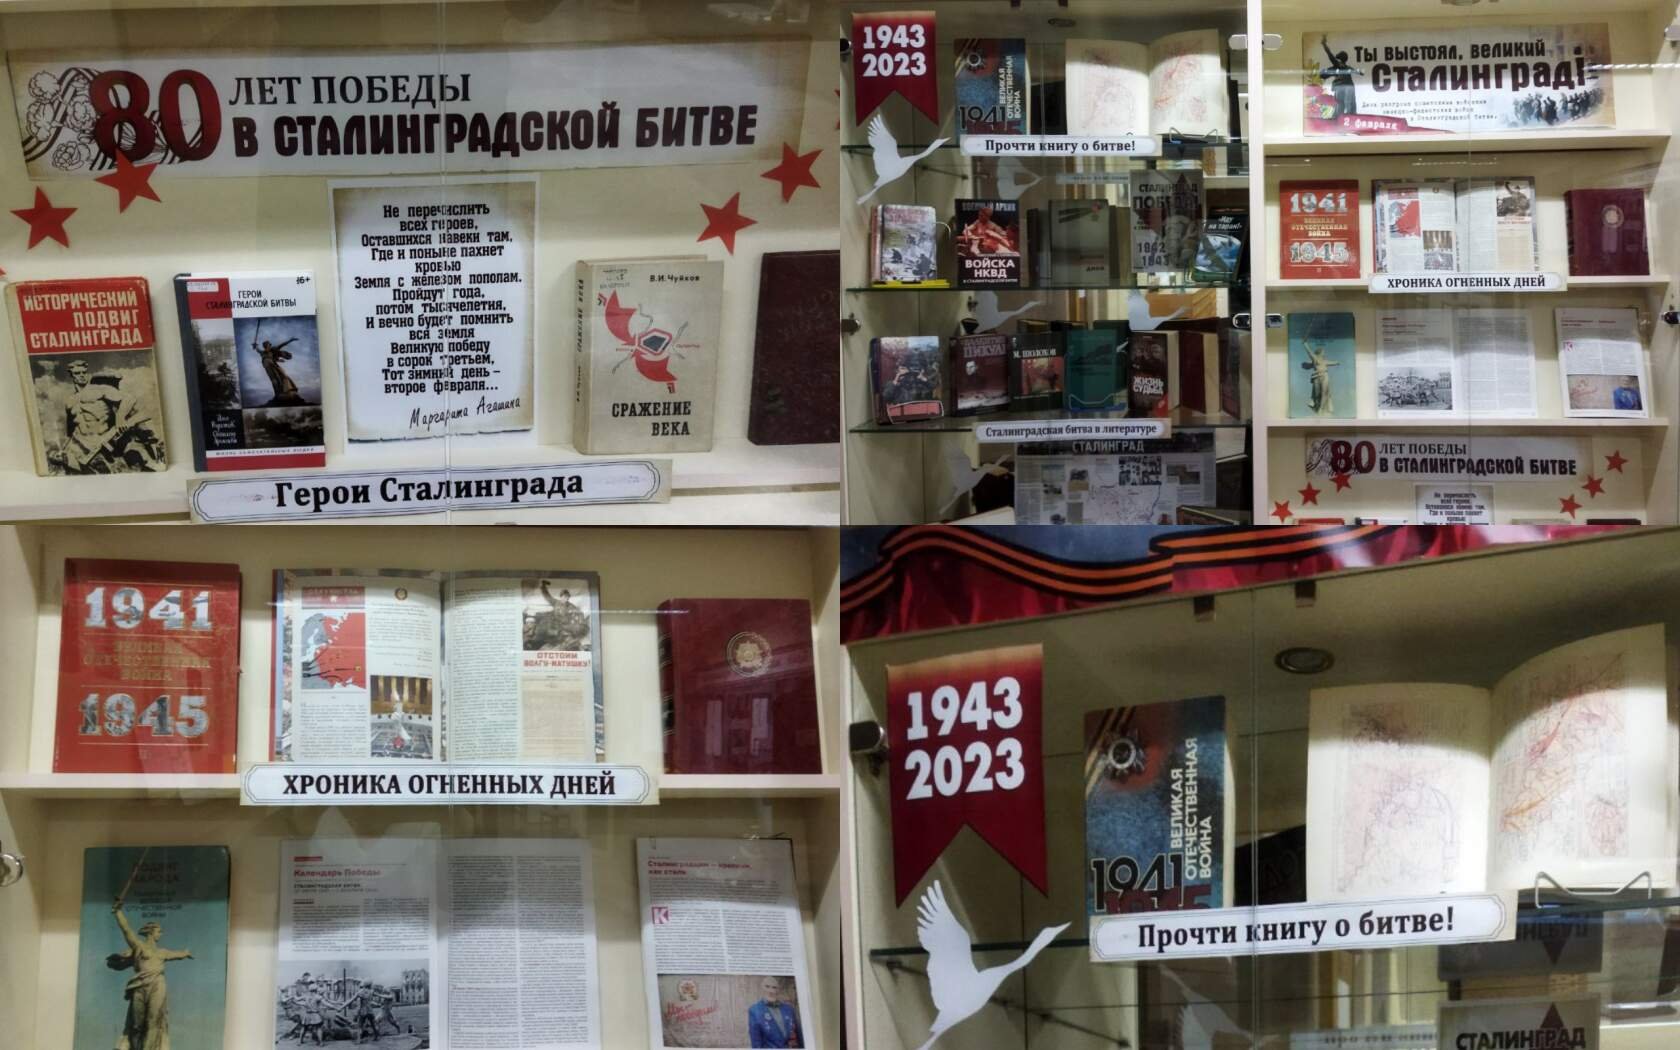 "Сталинград: 200 дней мужества и славы" - тематическая выставка